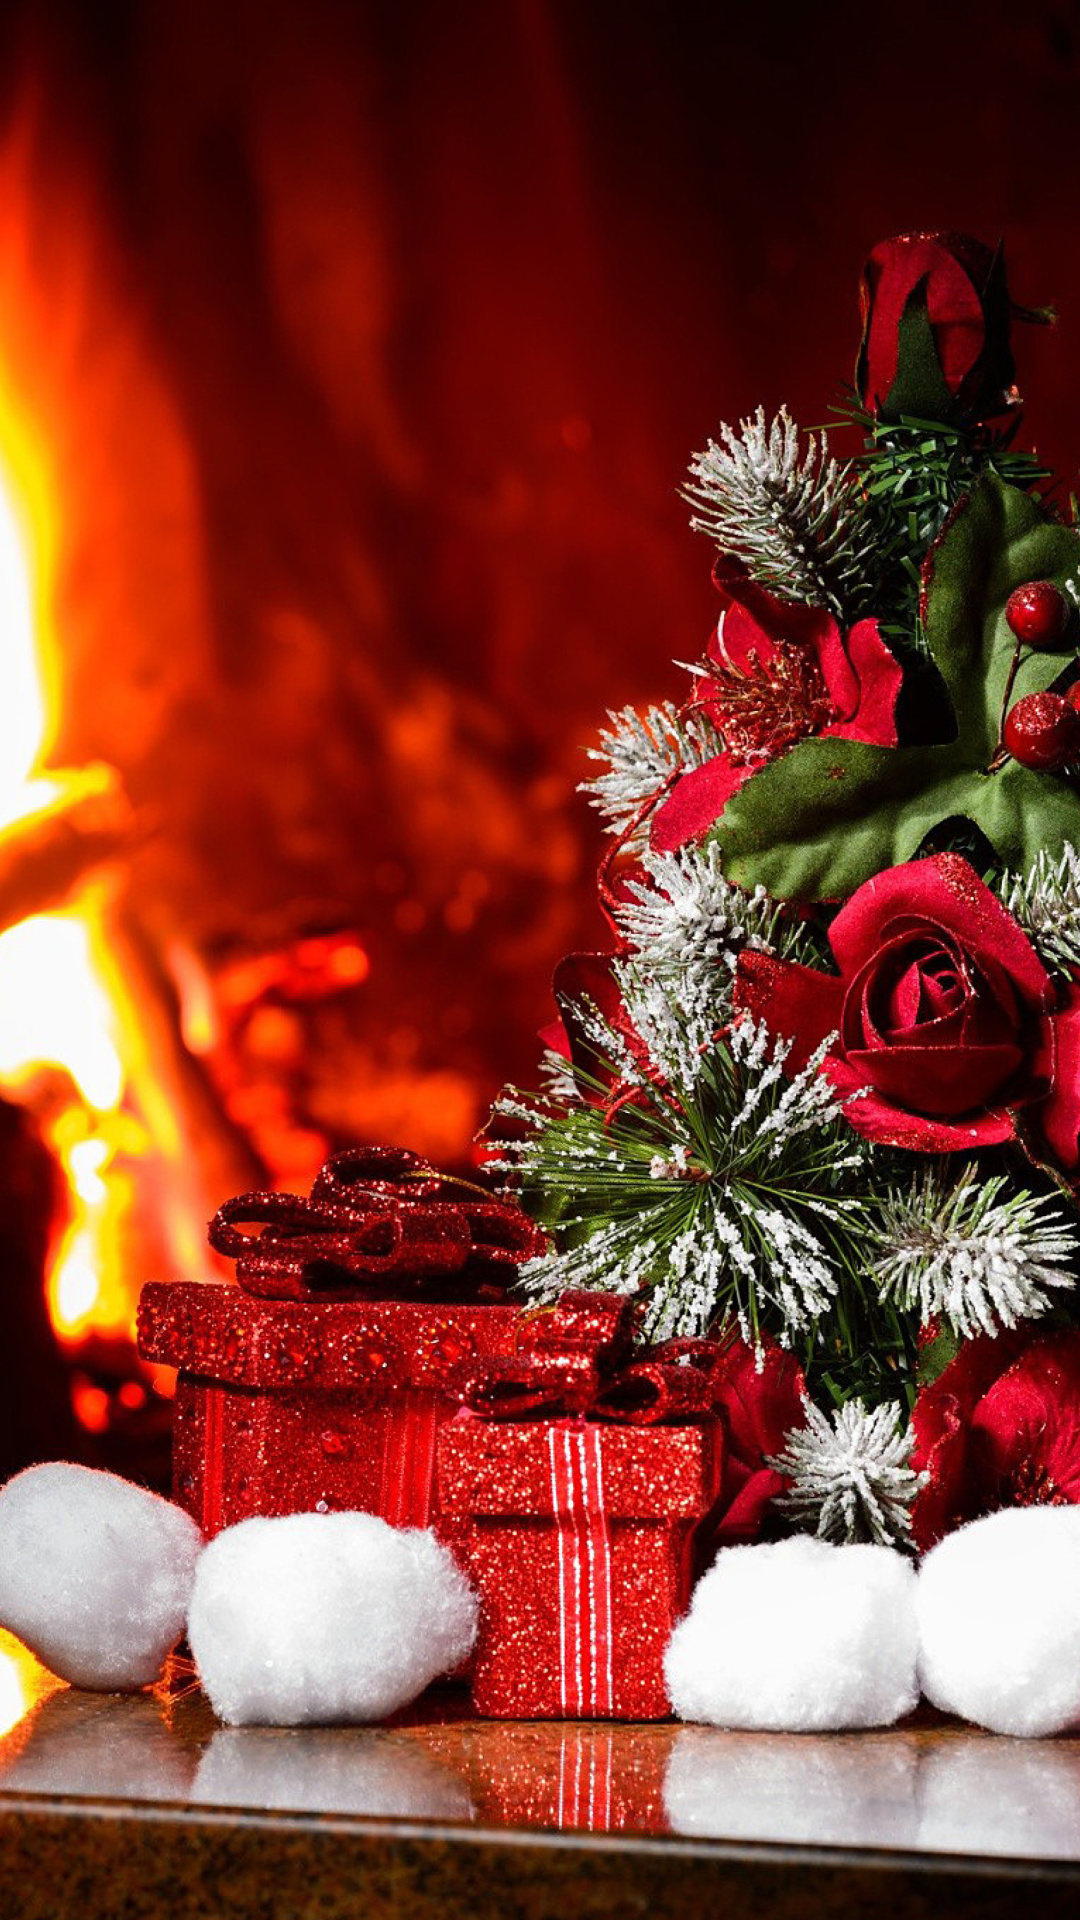 Christmas near Fireplace wallpaper 1080x1920